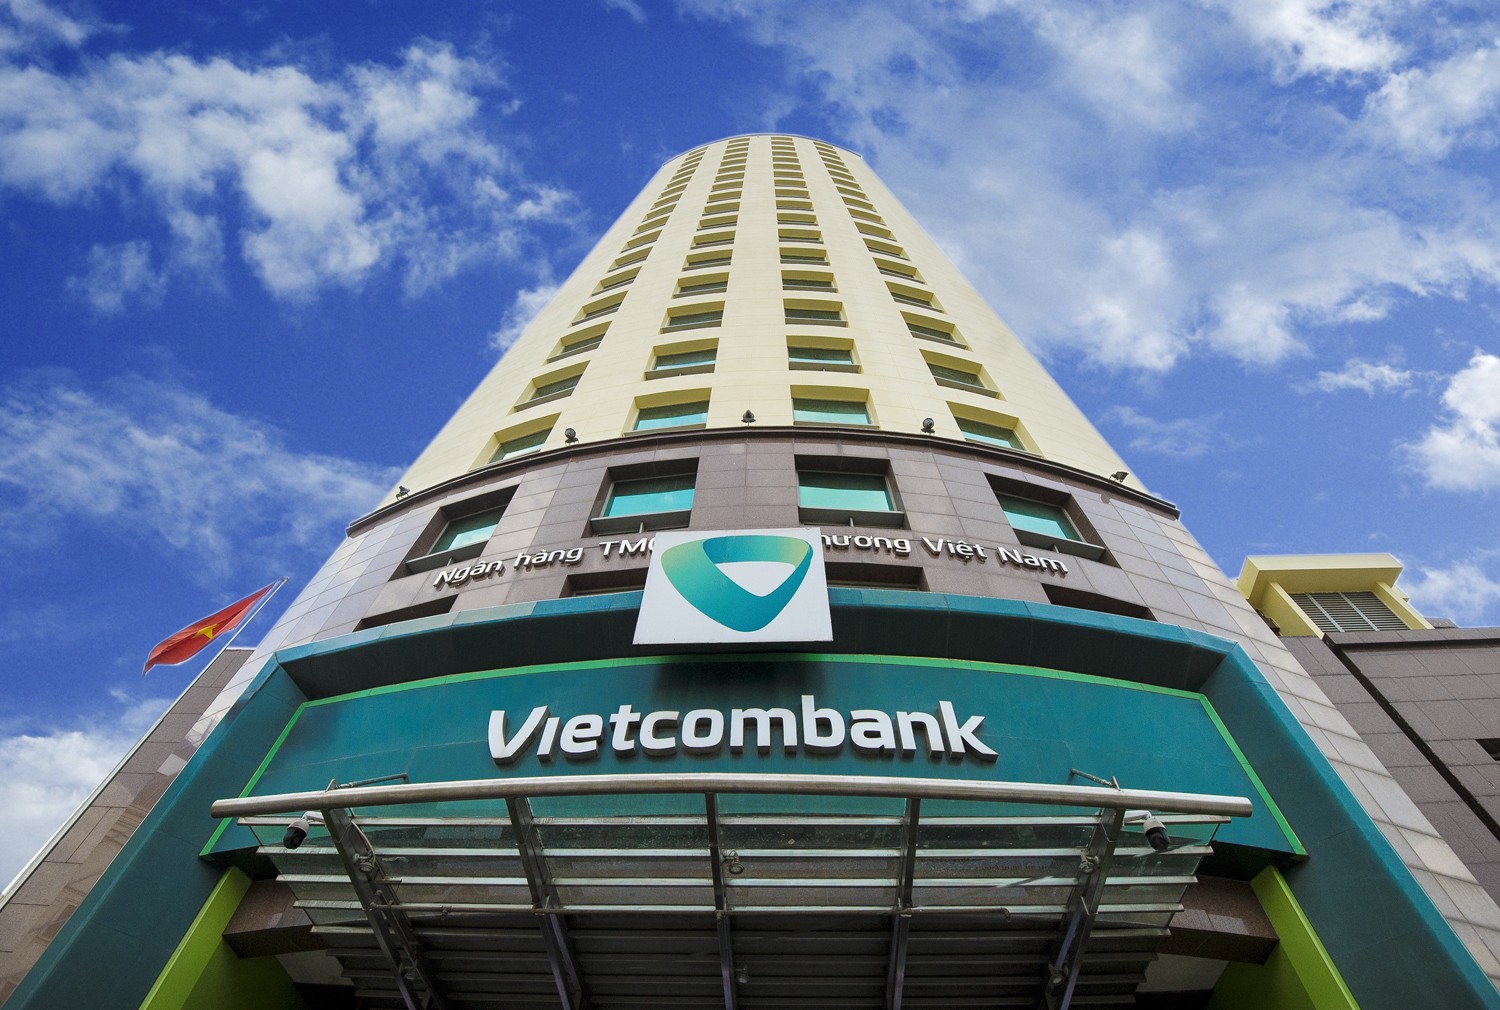 Hồ sơ doanh nghiệp - Năm Bảy Bảy muốn vay VietinBank 900 tỷ đồng trong 15 năm